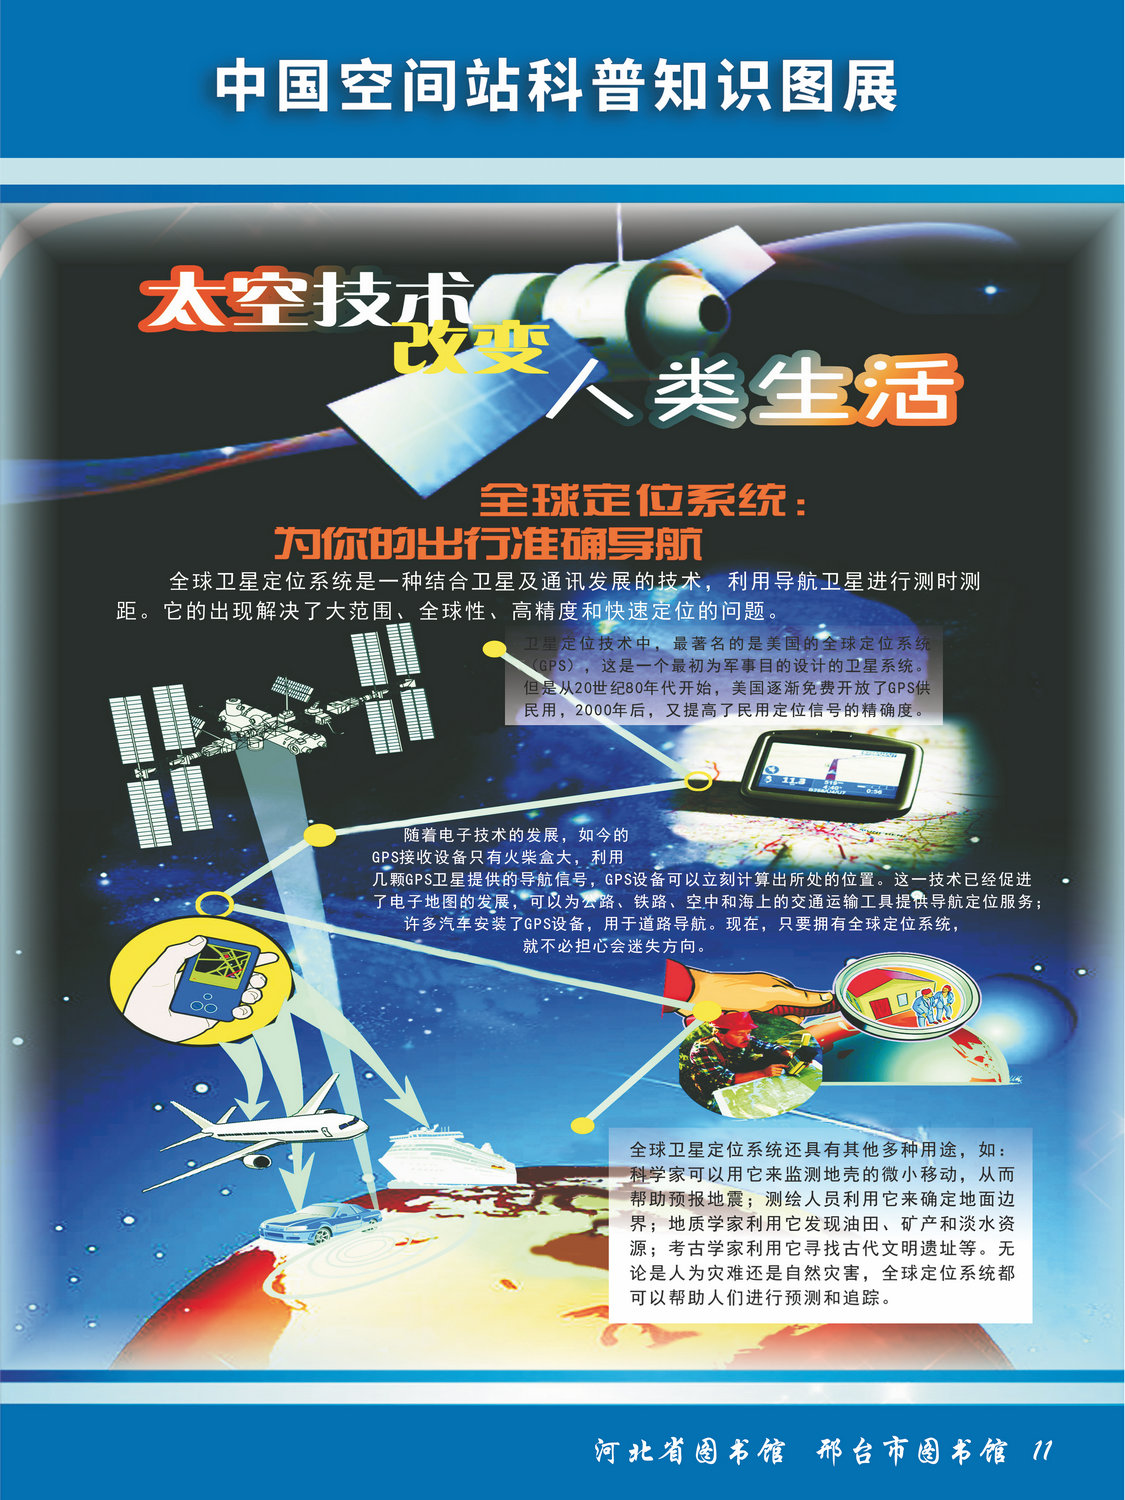 中国空间站科普知识图文展_图11